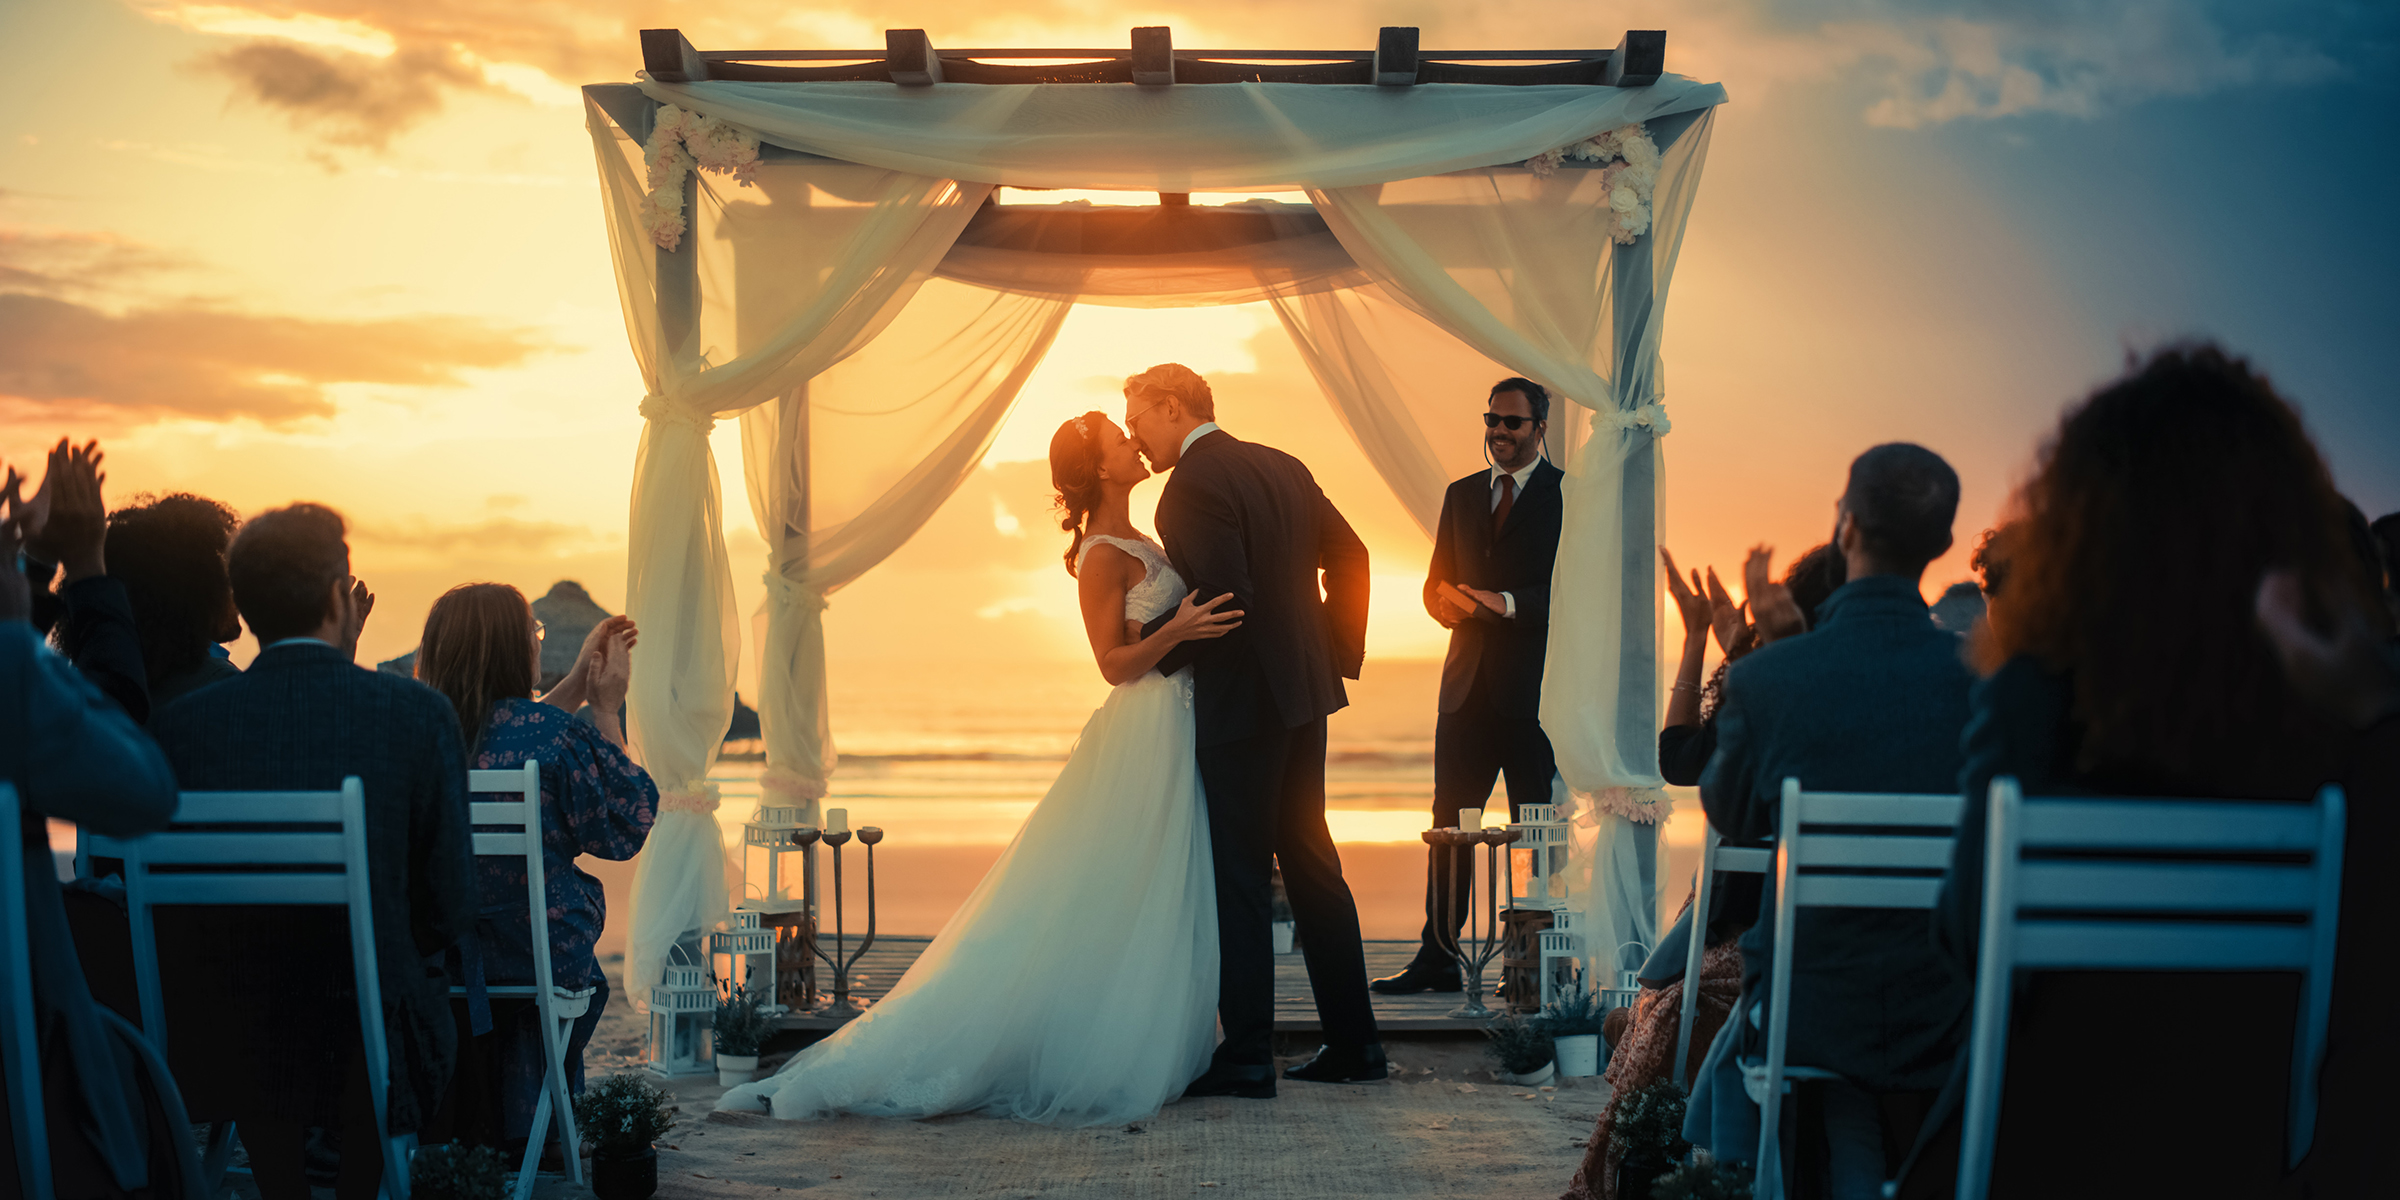 A beachside wedding | Source: Shutterstock